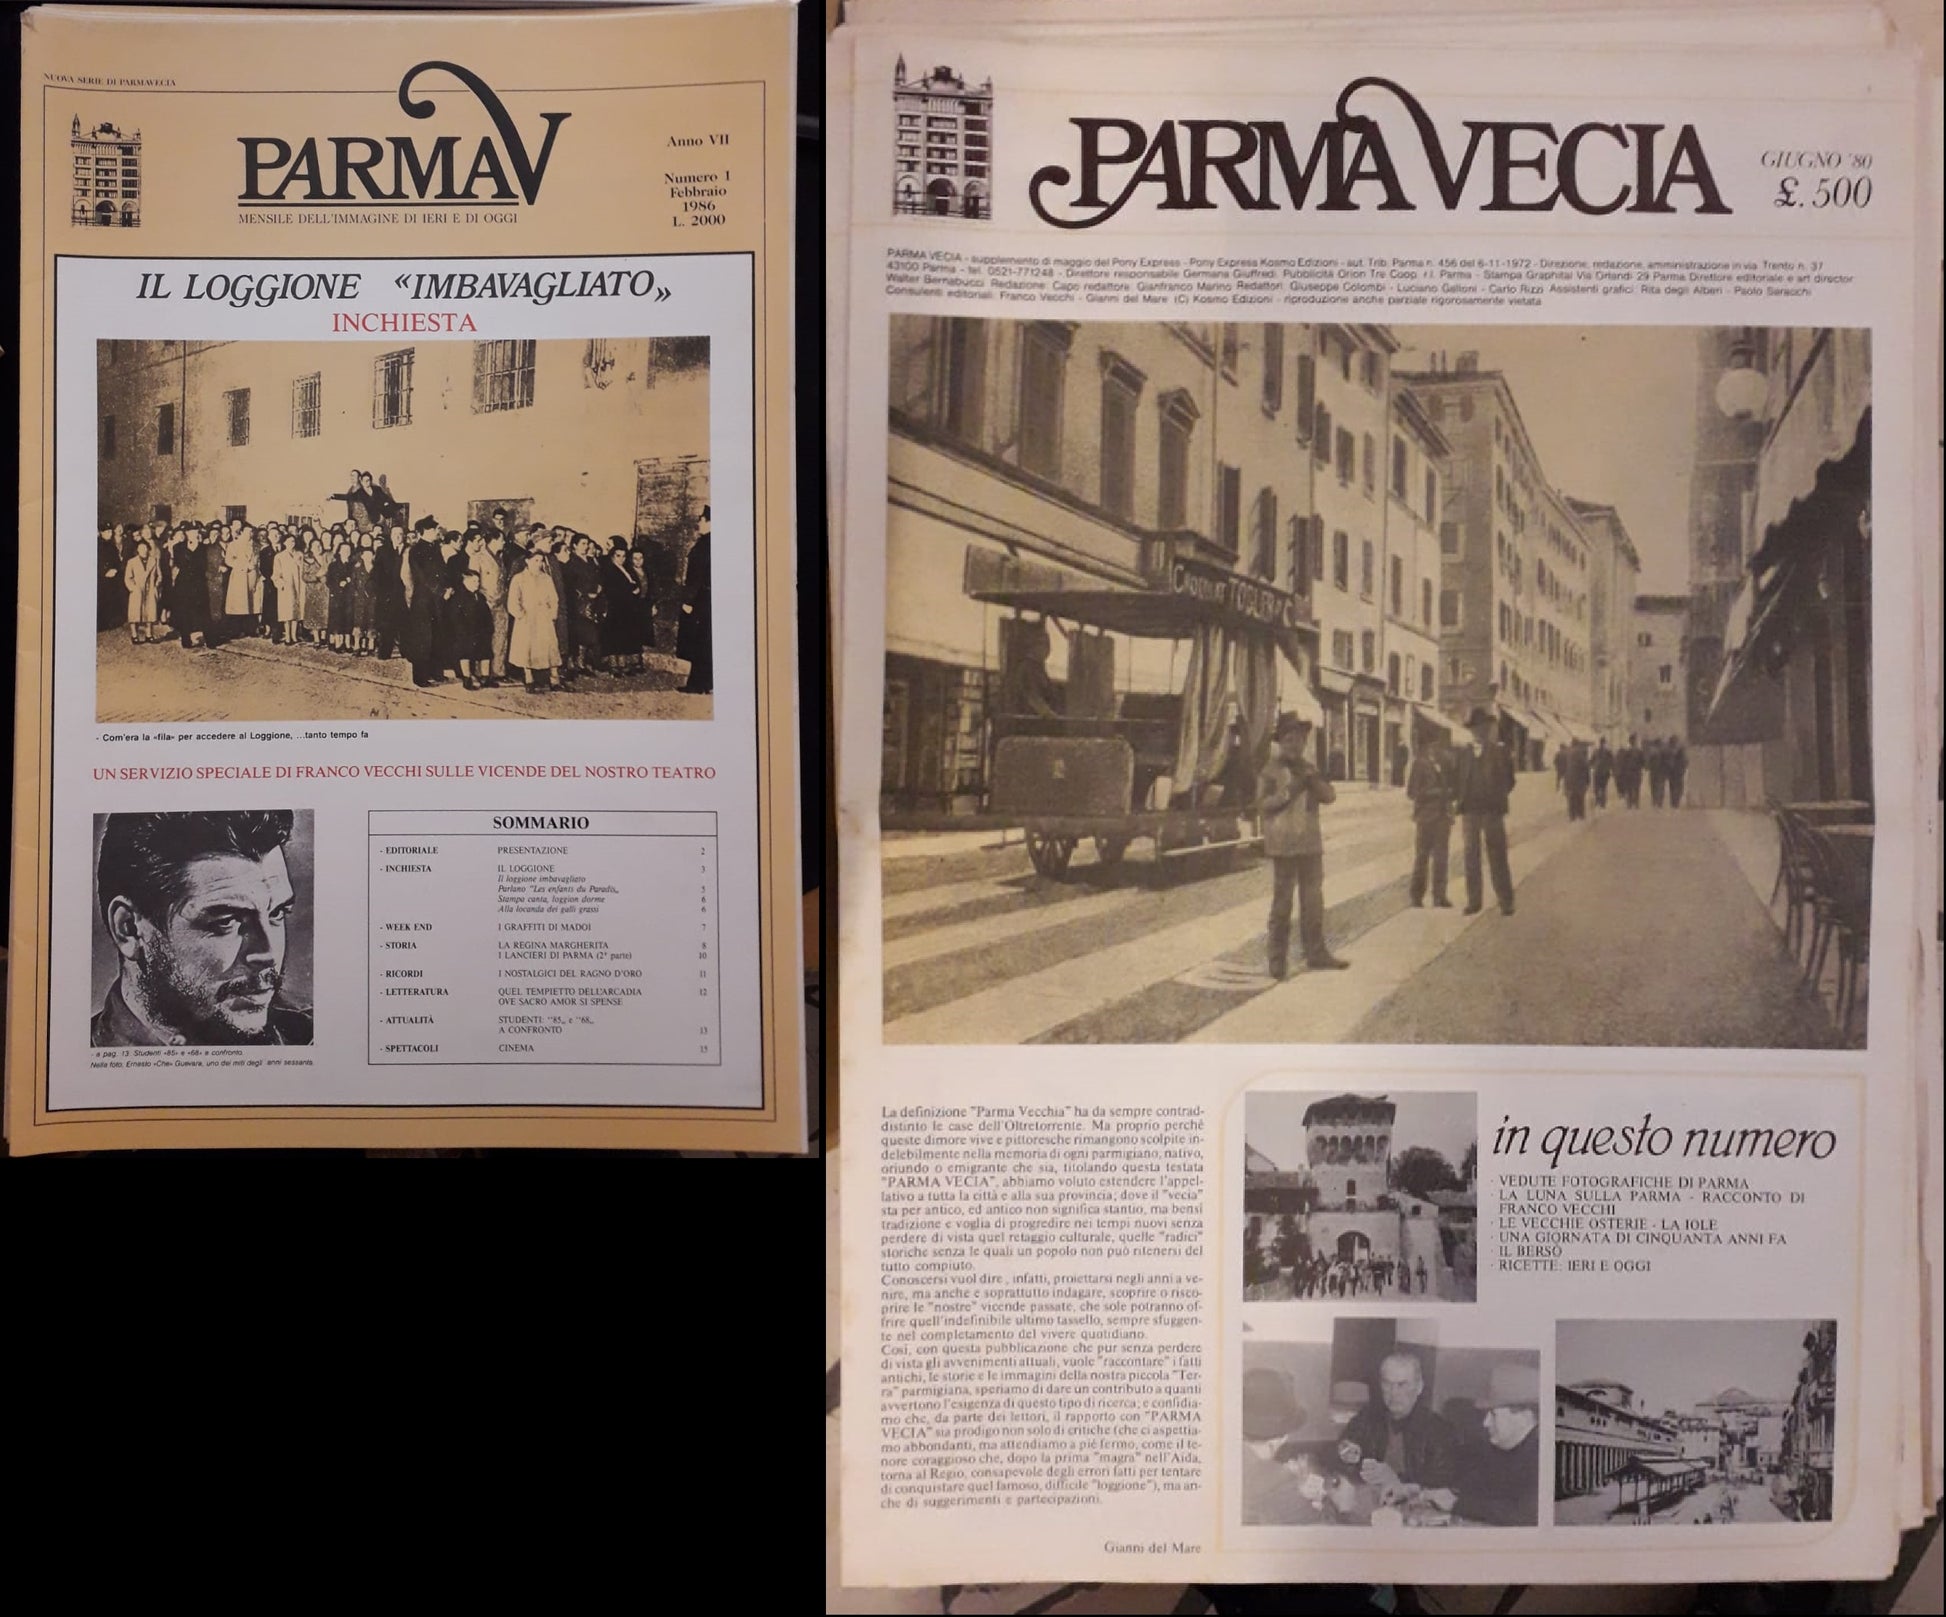 LR- PARMA VECIA PARMAVECIA 0/56 + NUOVA SERIE 1/9 -- KOSMO --- 1980 - S - WPR